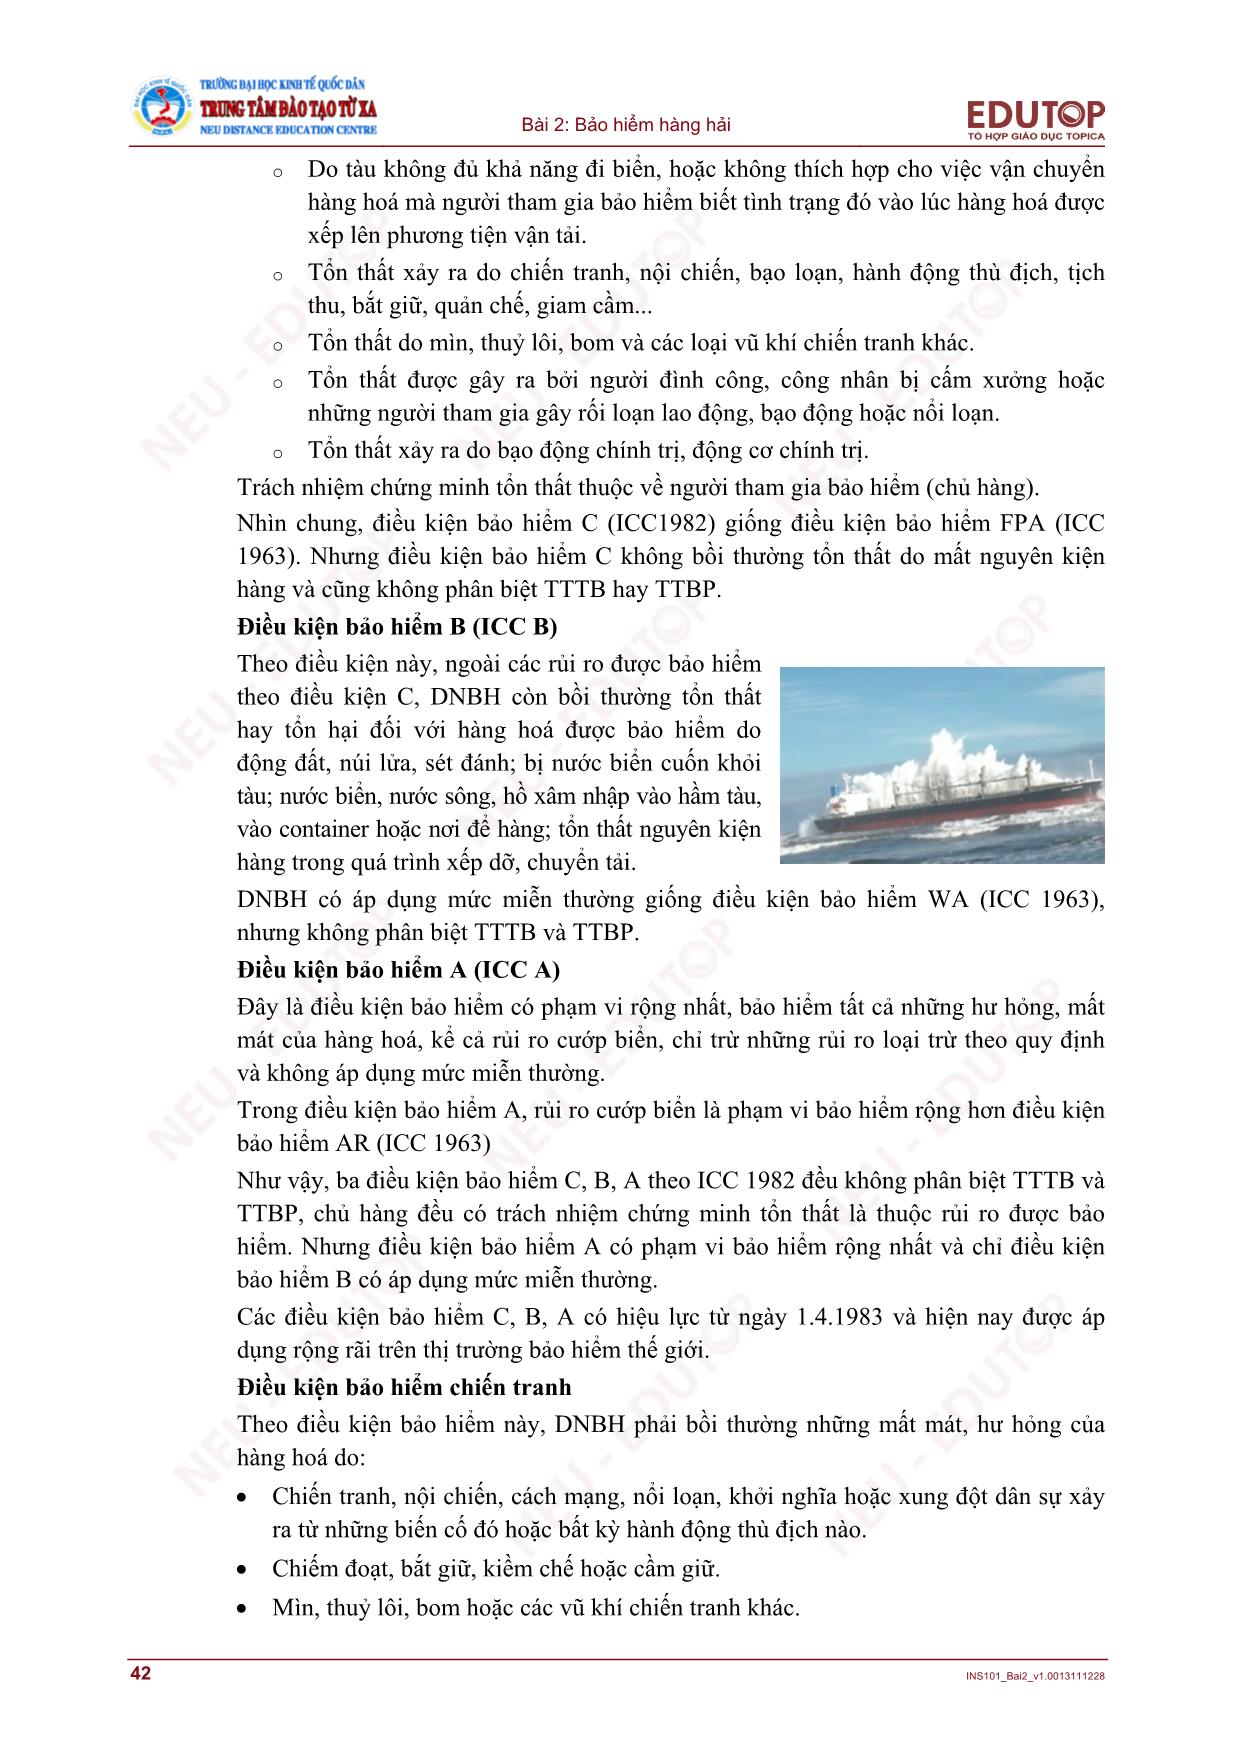 Bài giảng Bảo hiểm thương mại - Bài 2, Phần 2: Bảo hiểm hàng hải - Nguyễn Thị Lệ Huyền trang 10